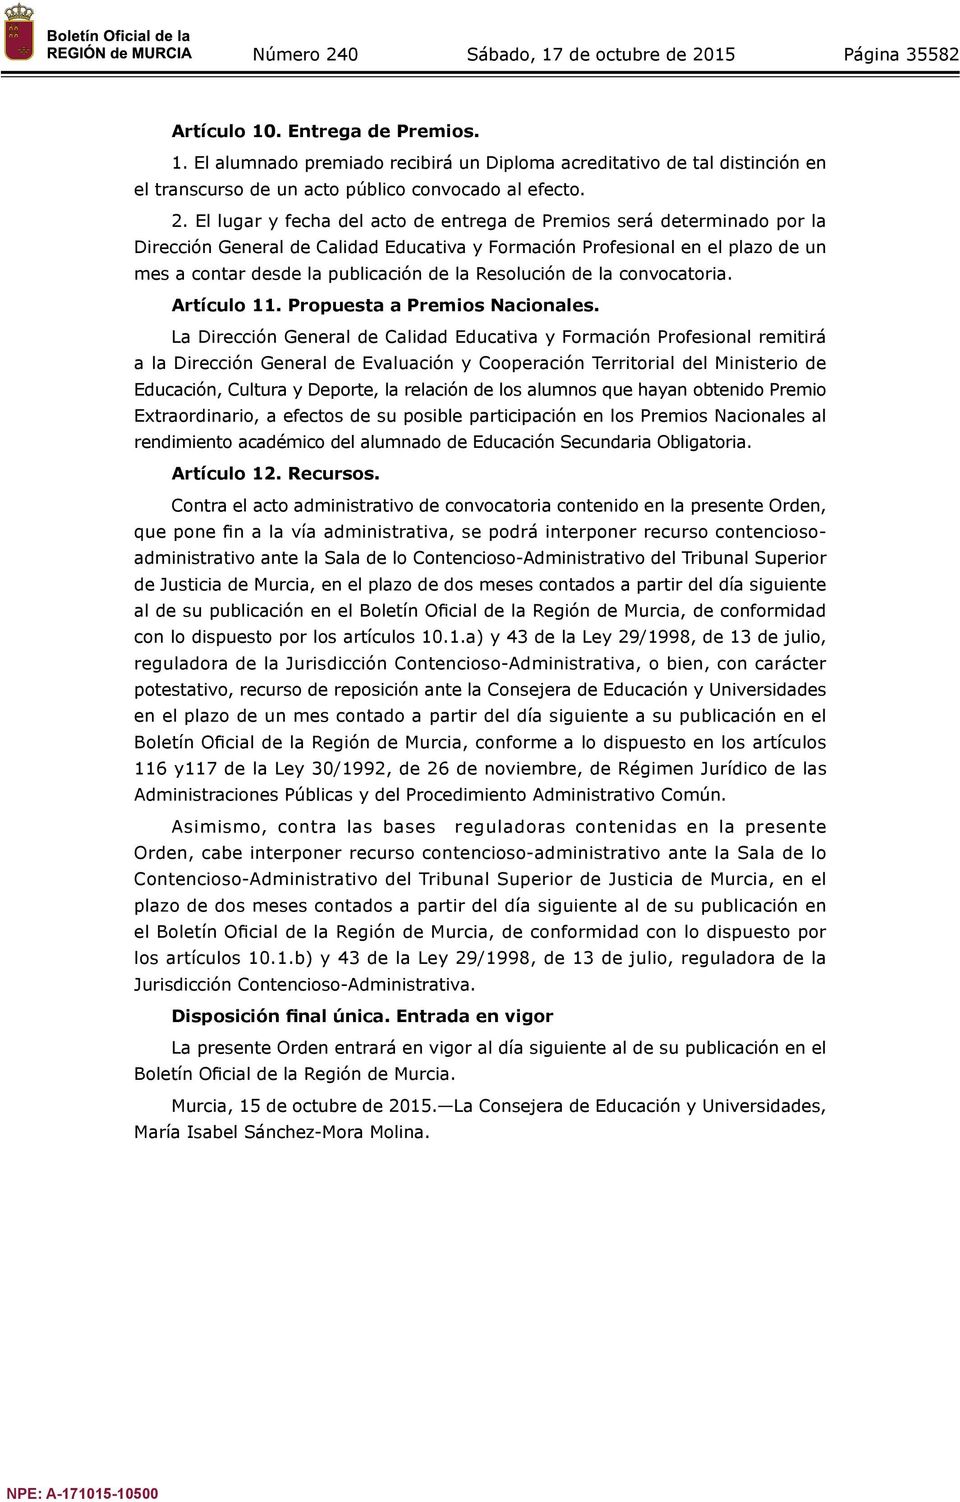 Resolución de la convocatoria. Artículo 11. Propuesta a Premios Nacionales.